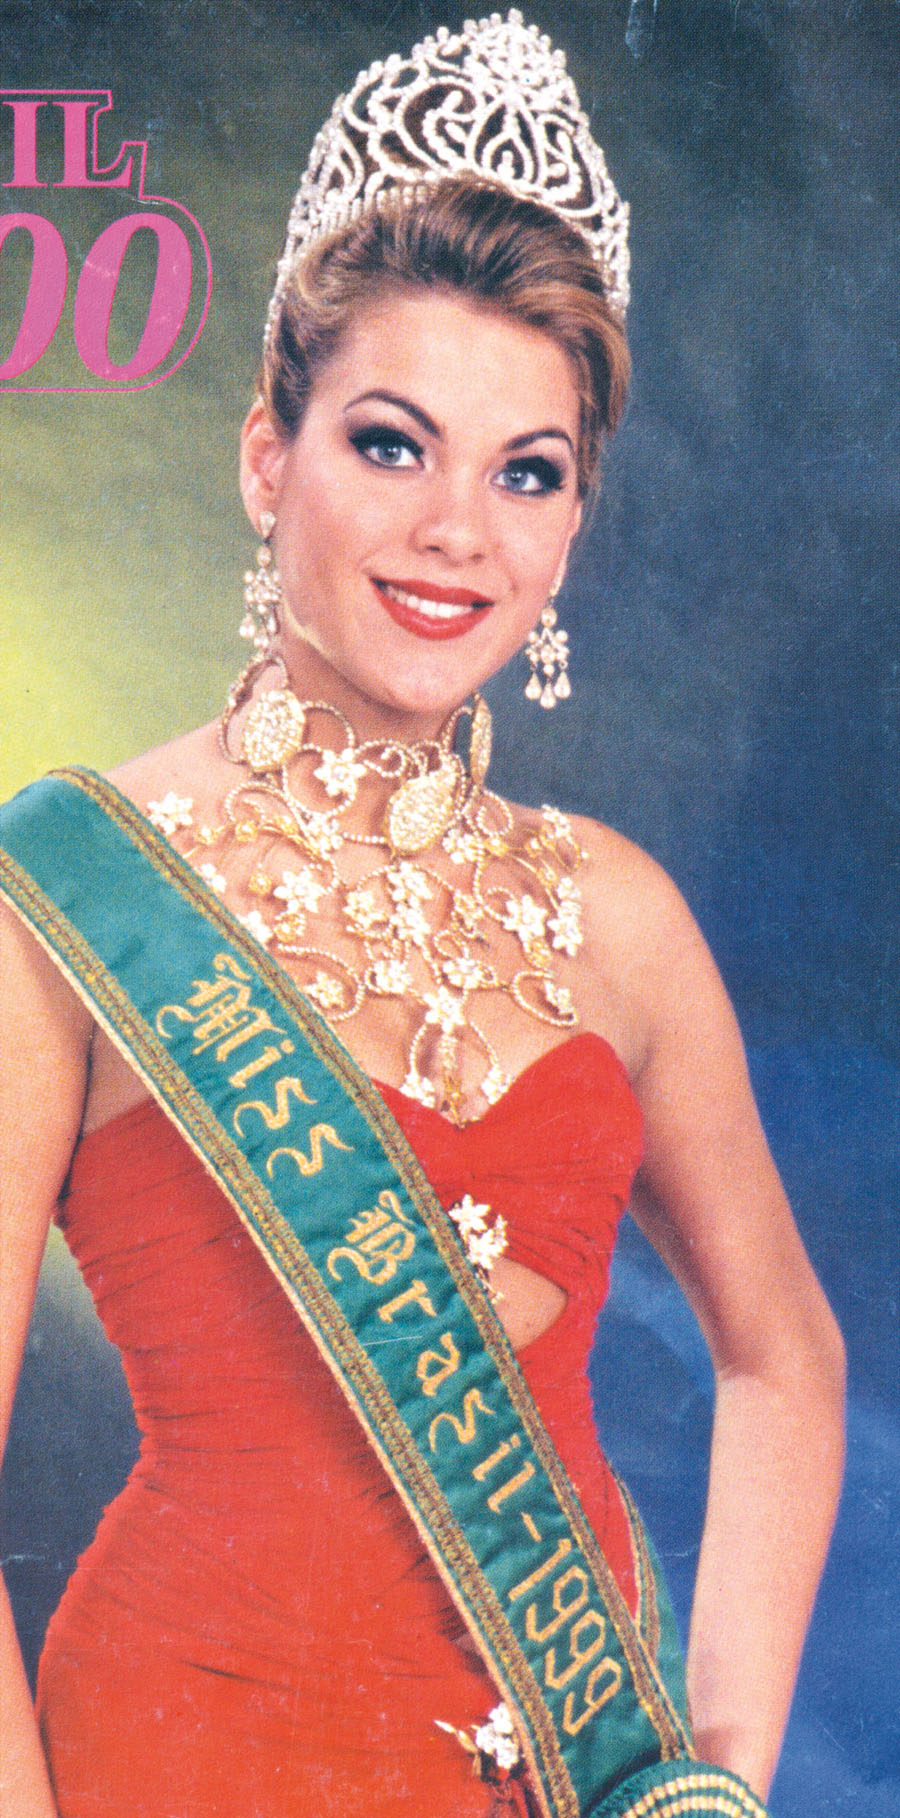 Em 1999, Renata representou o Brasil no Miss Universo e levou o 12° lugar